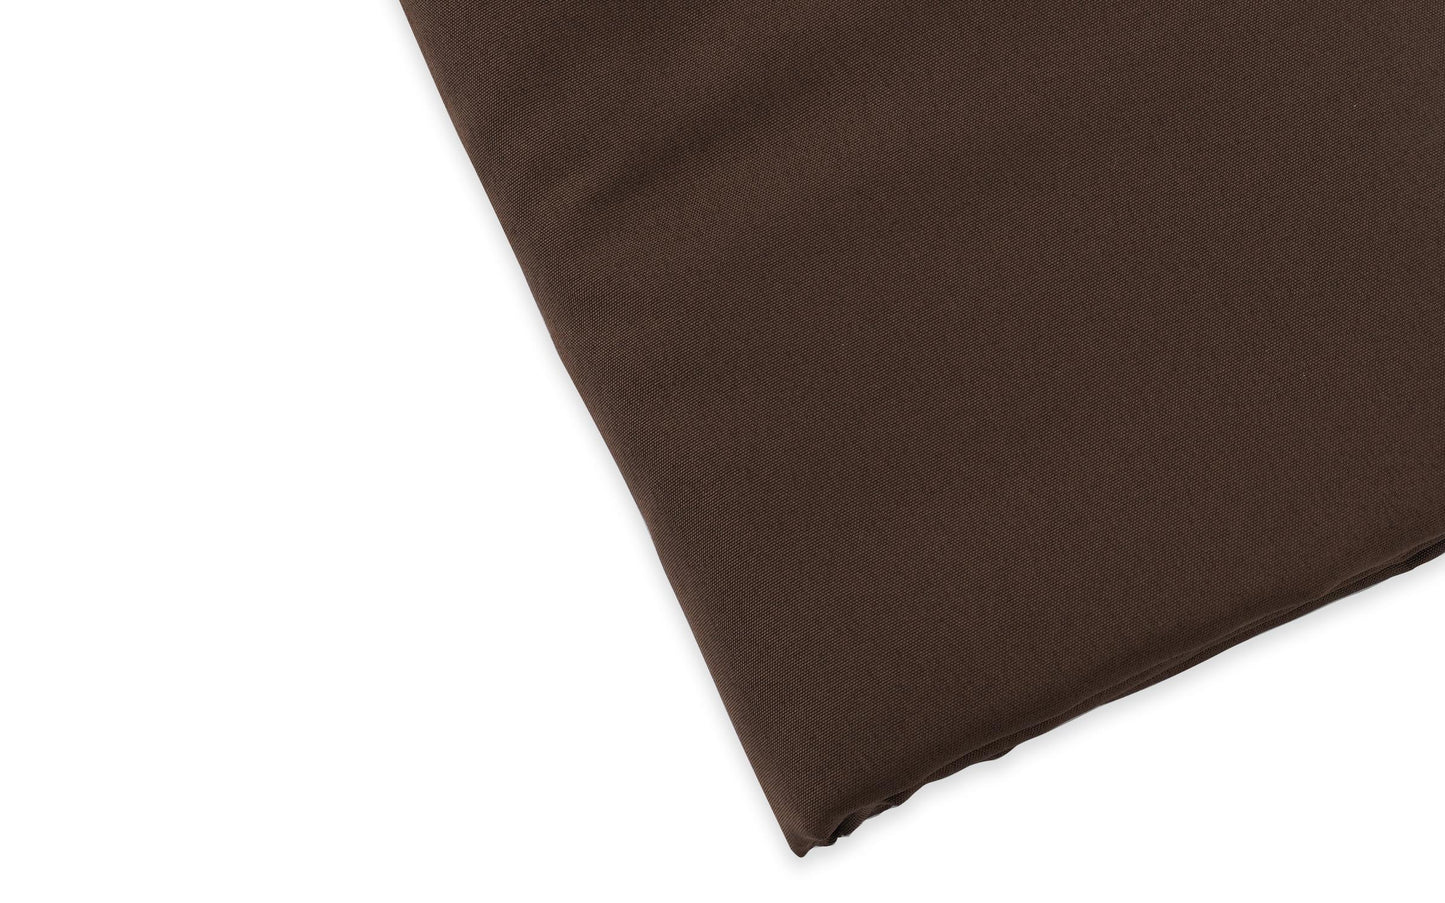 saketi italy - bed sheet without elastic brock